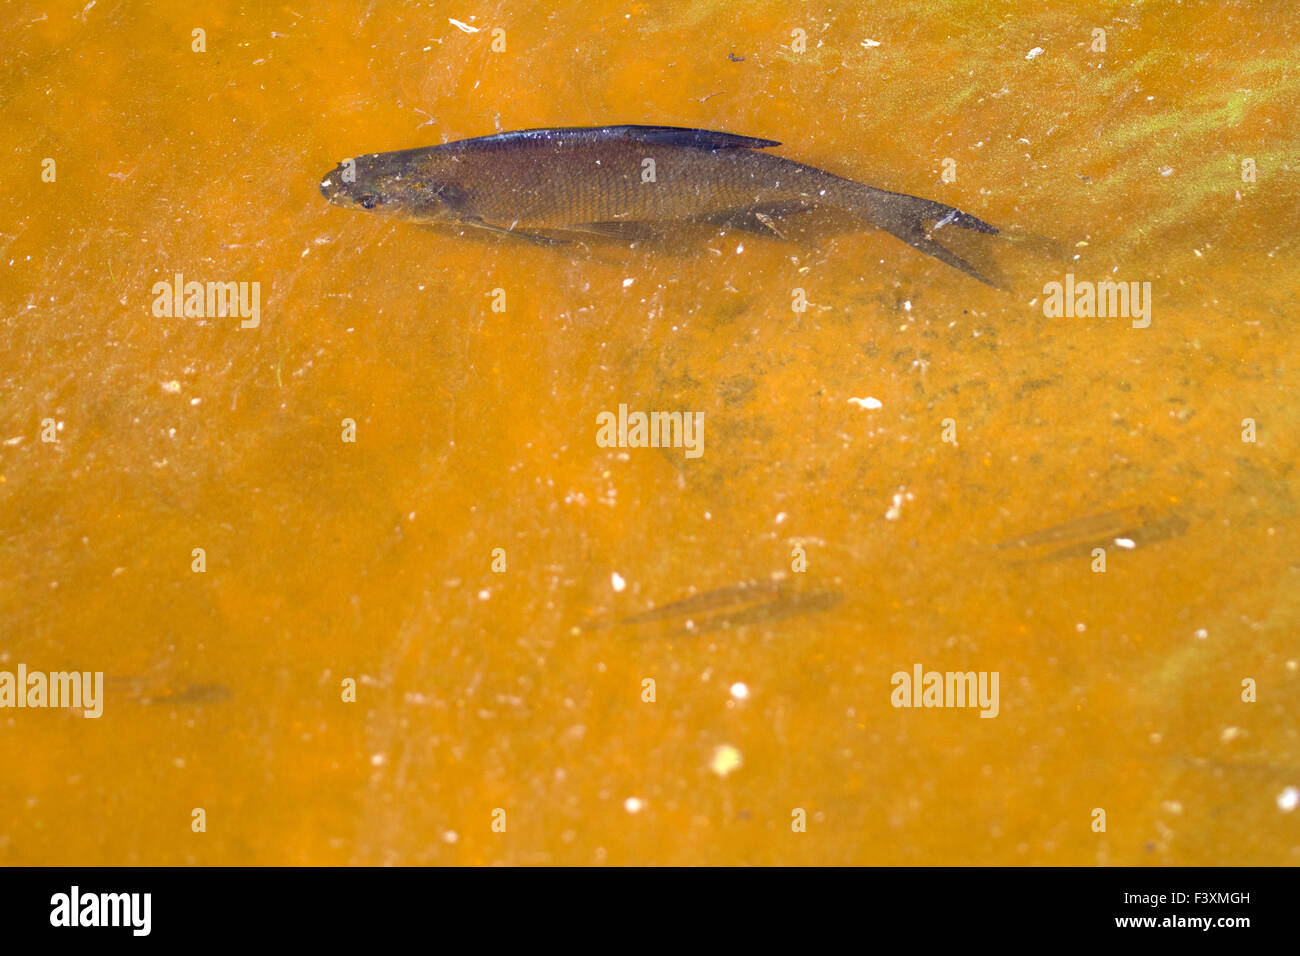 white-eye fish underwater Stock Photo